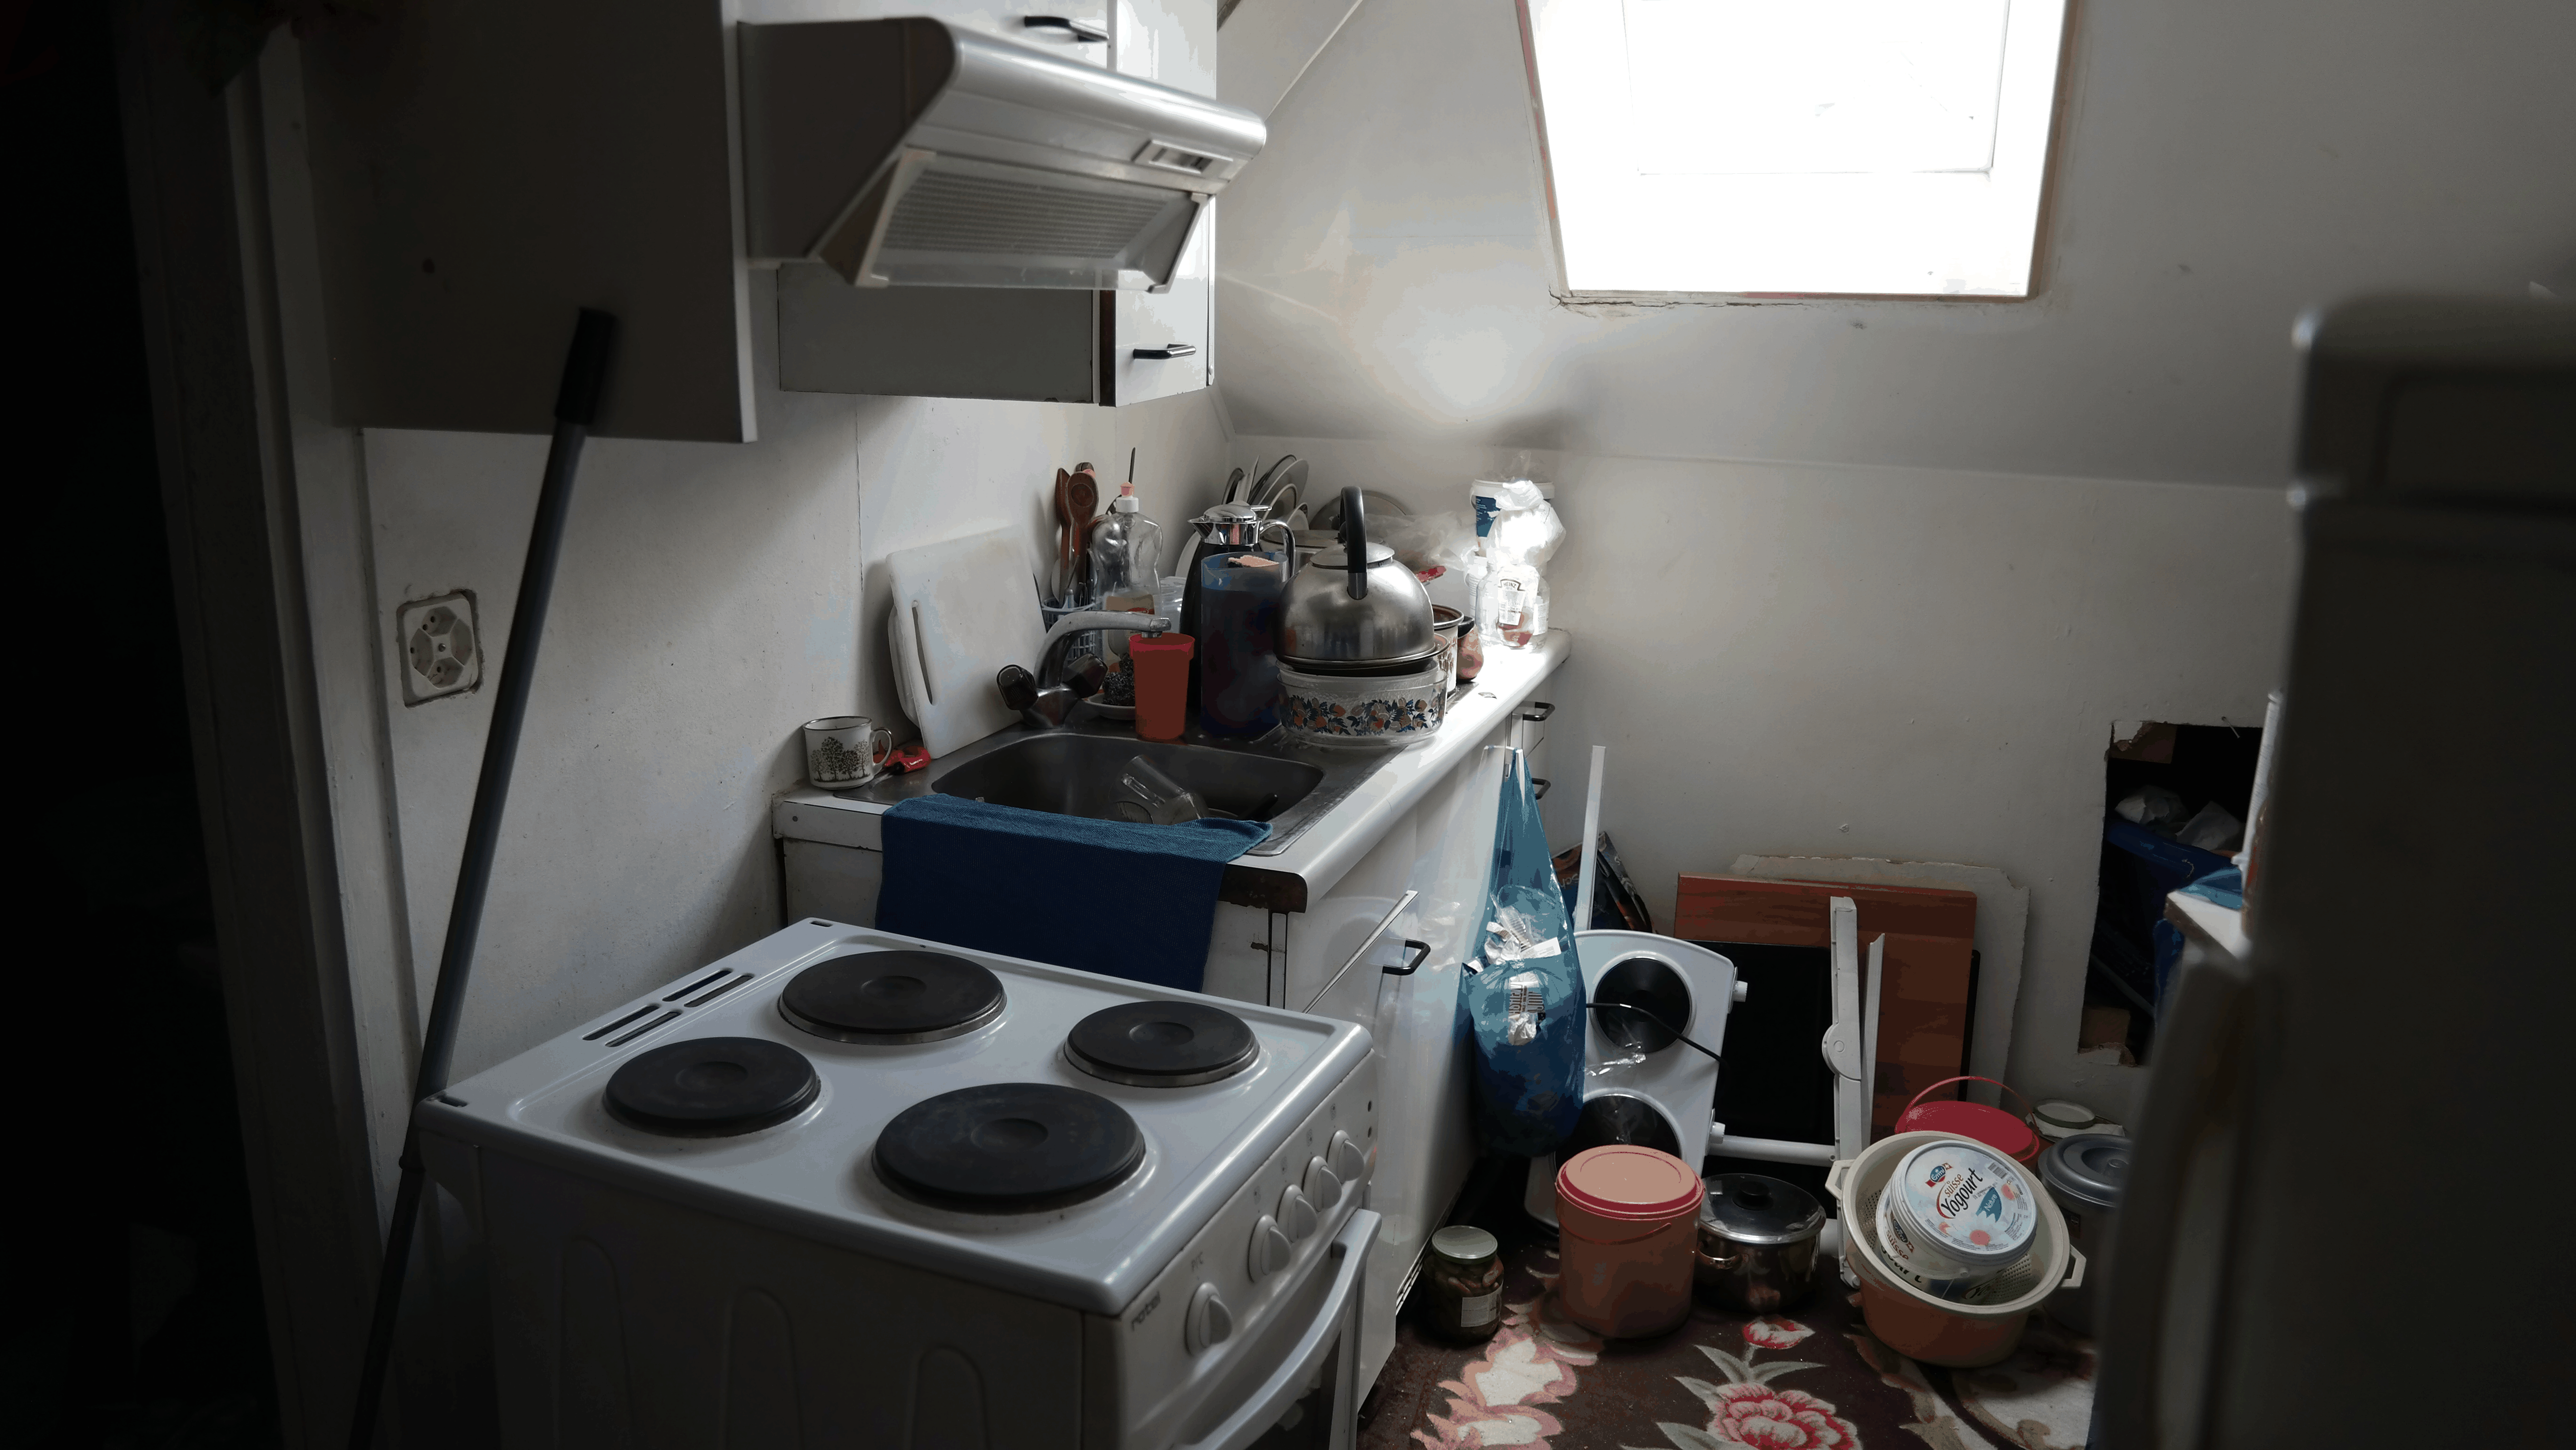 Küche der 1.5-Zimmer-Wohnung von Amal und ihrer Mutter. Kostenpunkt: 1400 Franken pro Monat.&nbsp;